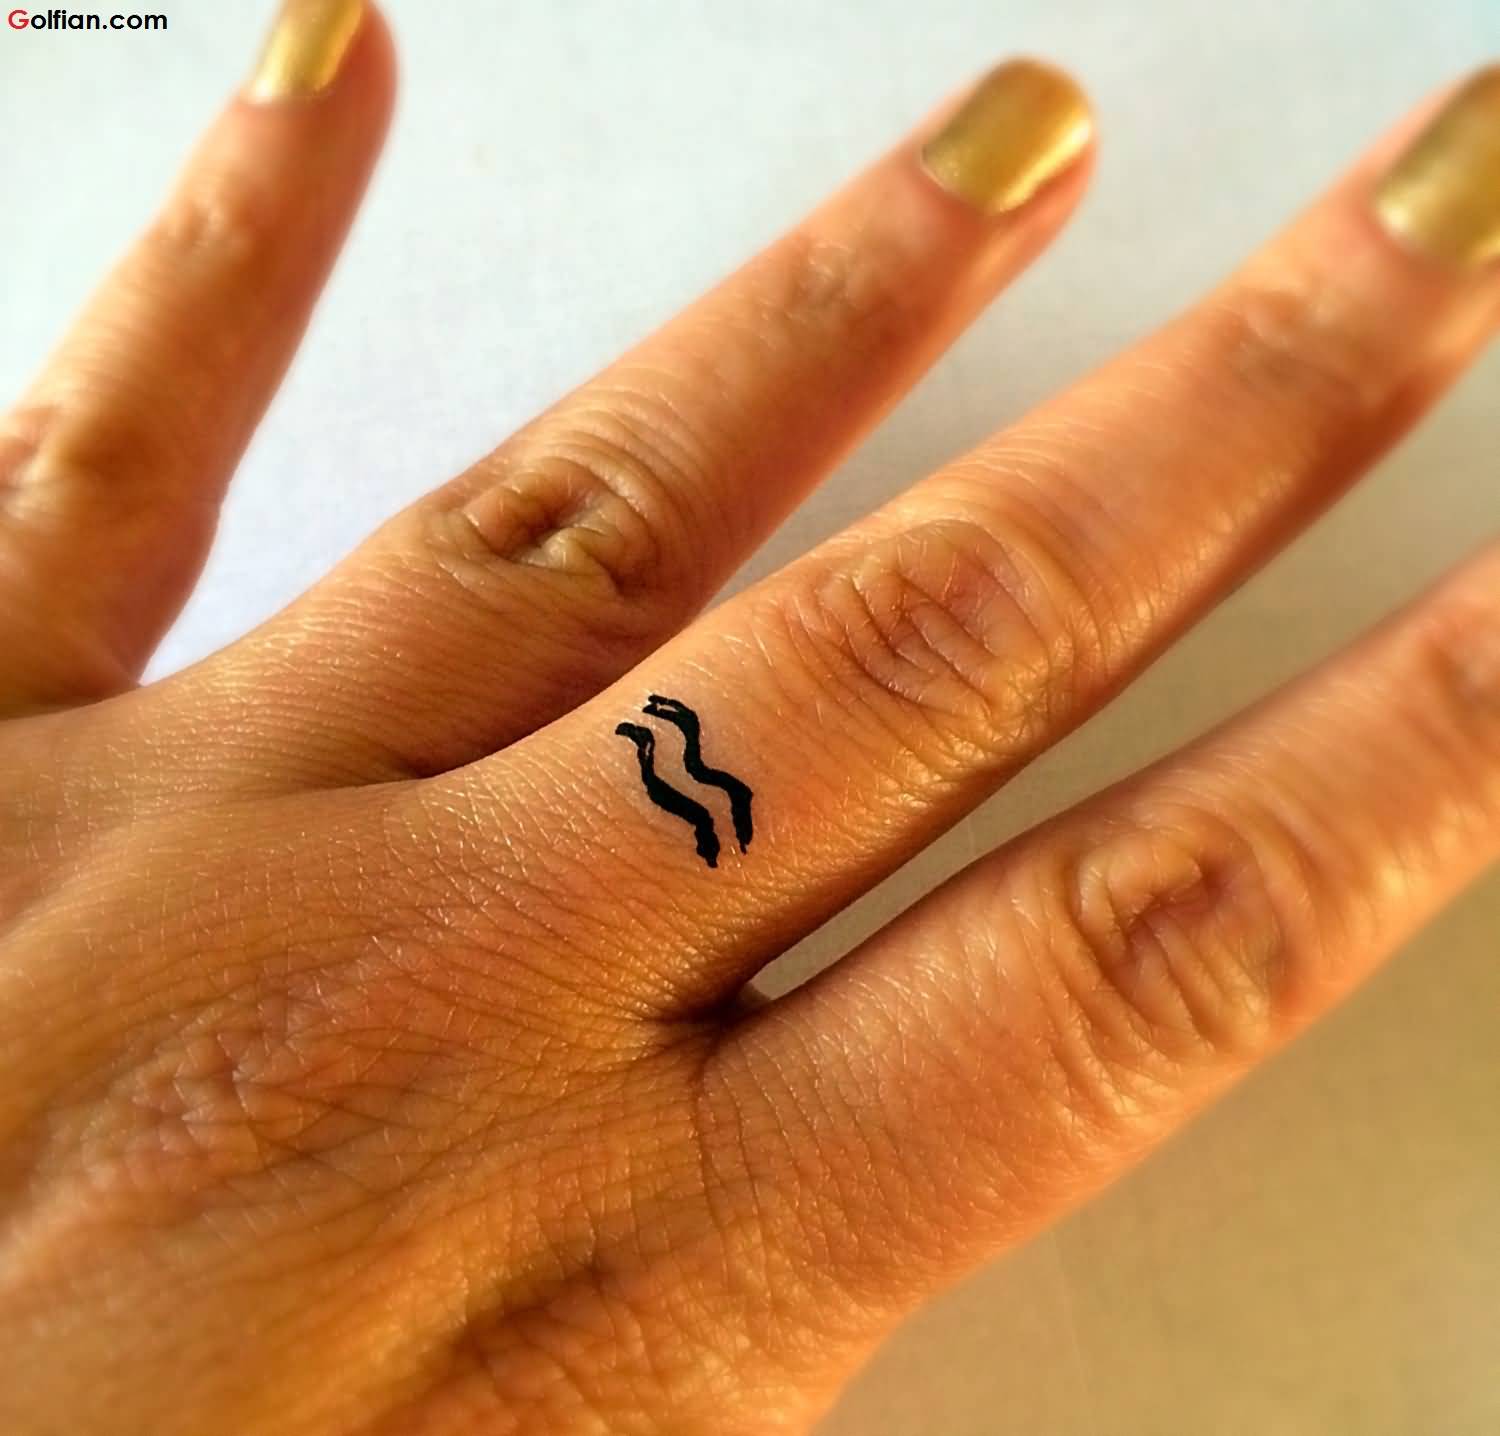 Black Aquarius Zodiac Symbol Tattoo On Left Hand Finger